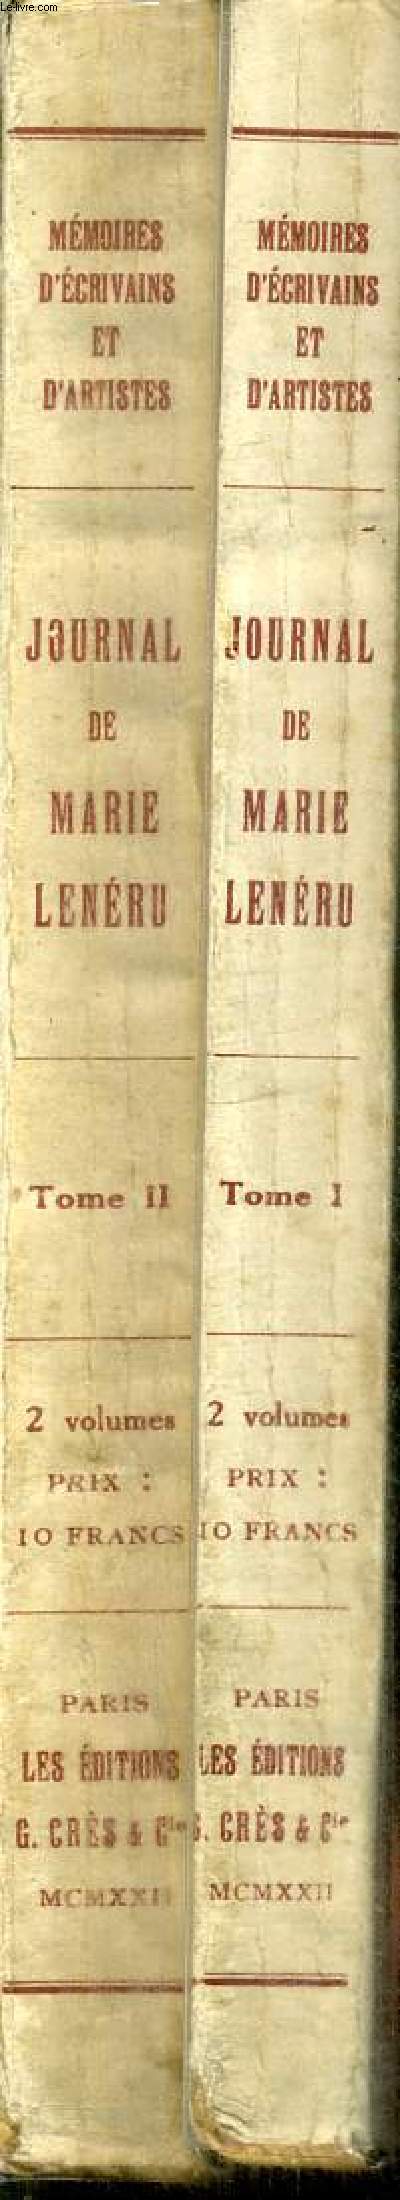 JOURNAL DE MARIE LENERU - PREFACE DE FRANCOIS DE CUREL - TOME PREMIER ET DEUXIEME EN 2 VOLUMES.